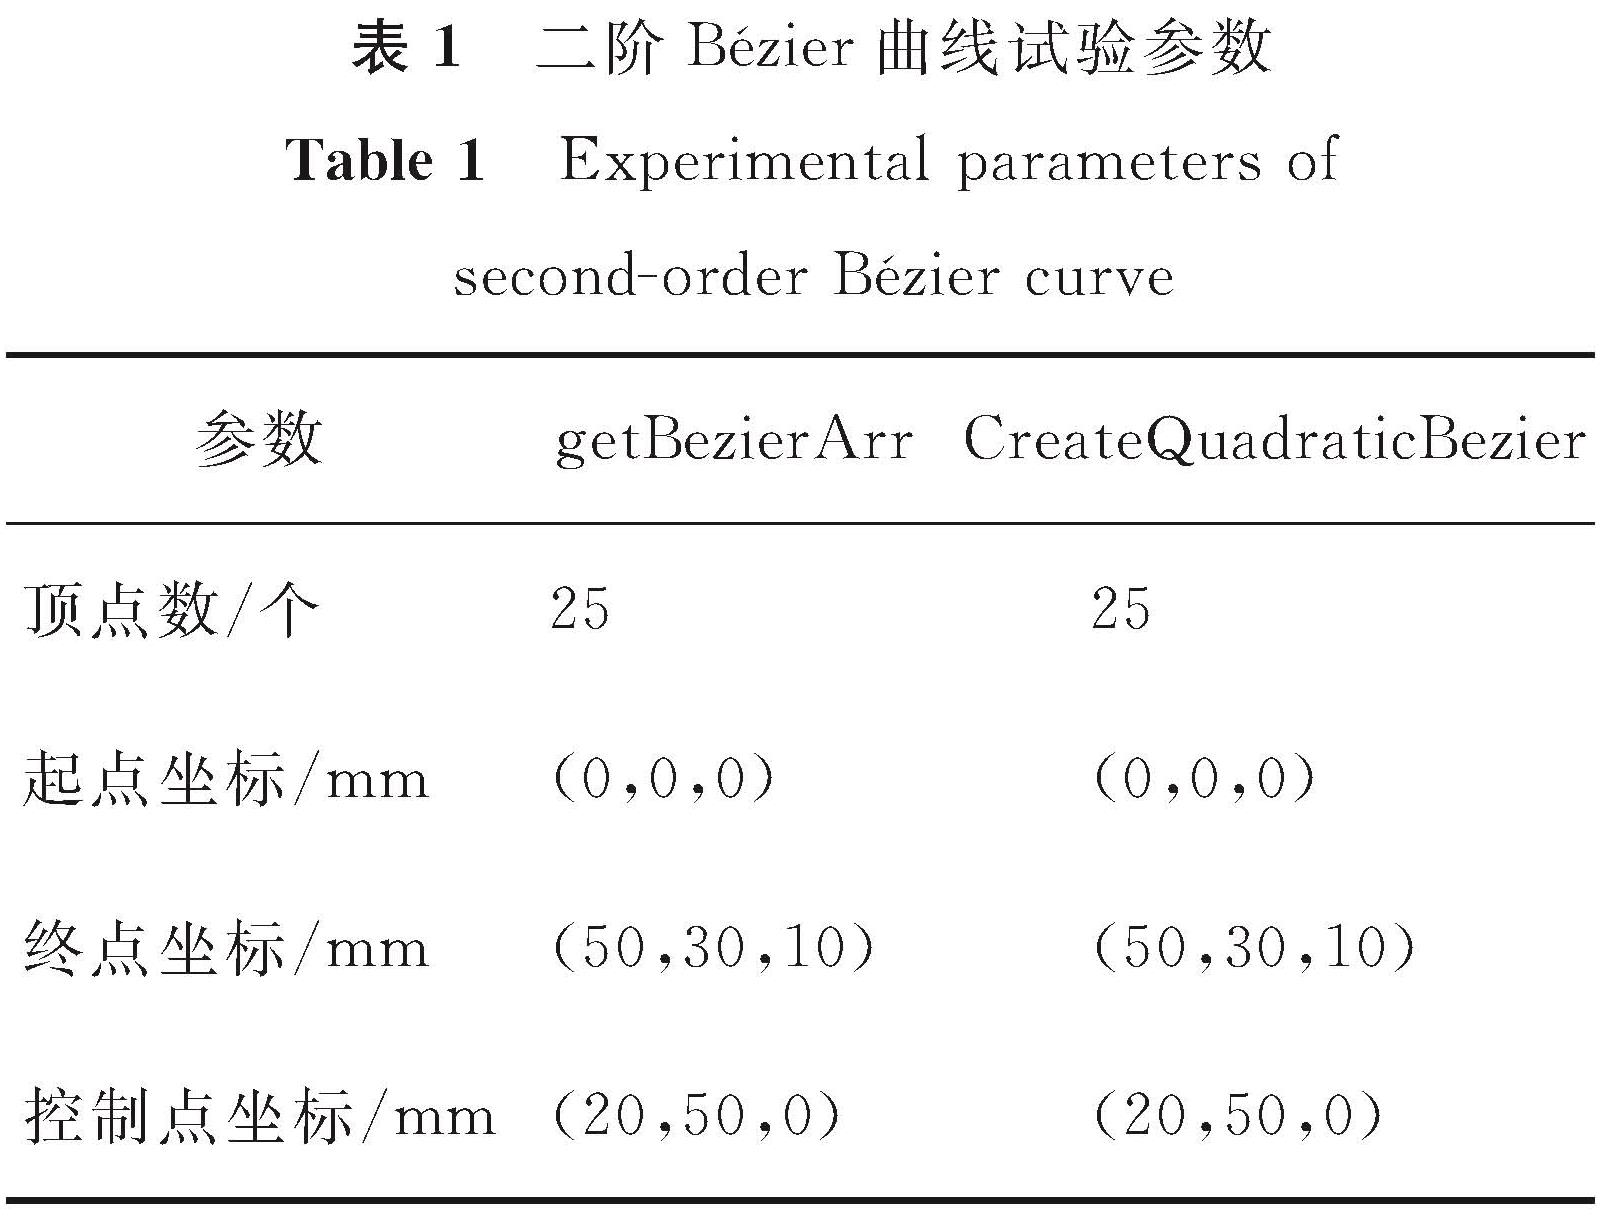 表1 二阶Bézier曲线试验参数<br/>Table 1 Experimental parameters of second-order Bézier curve